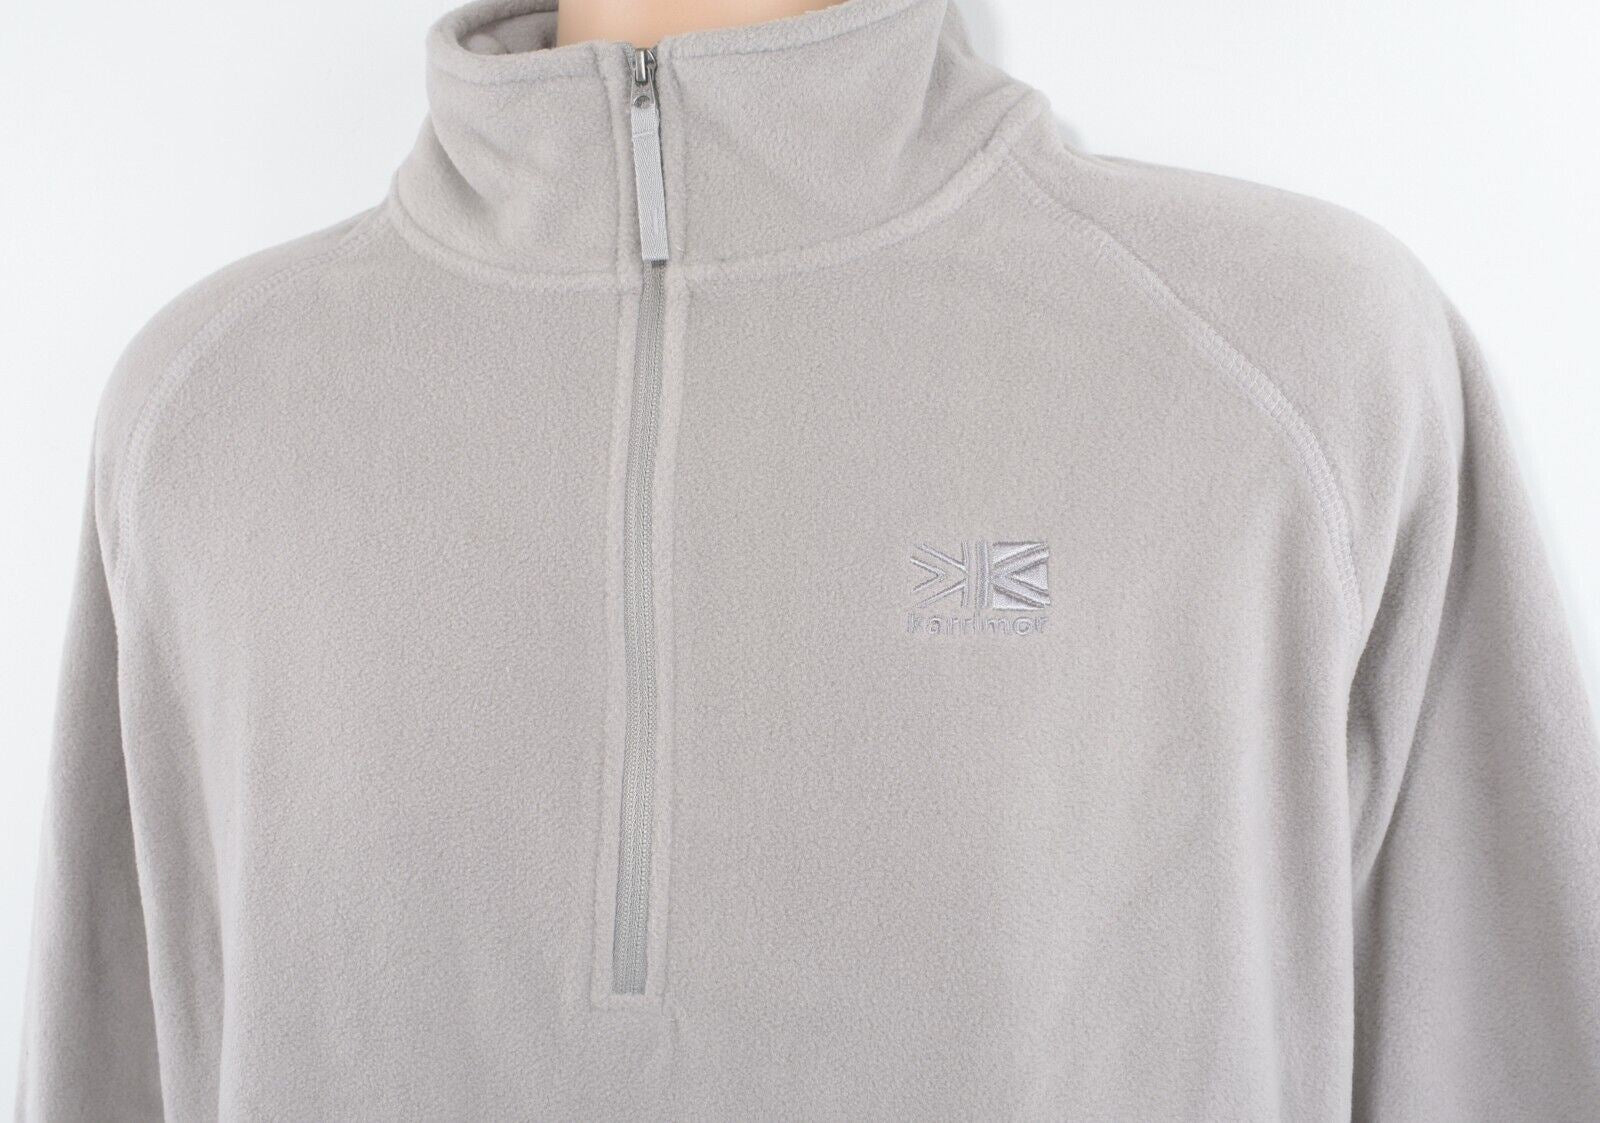 KARRIMOR Men's ASPEN Microfleece 1/3 Zip Fleece Sweatshirt, Grey, size XL